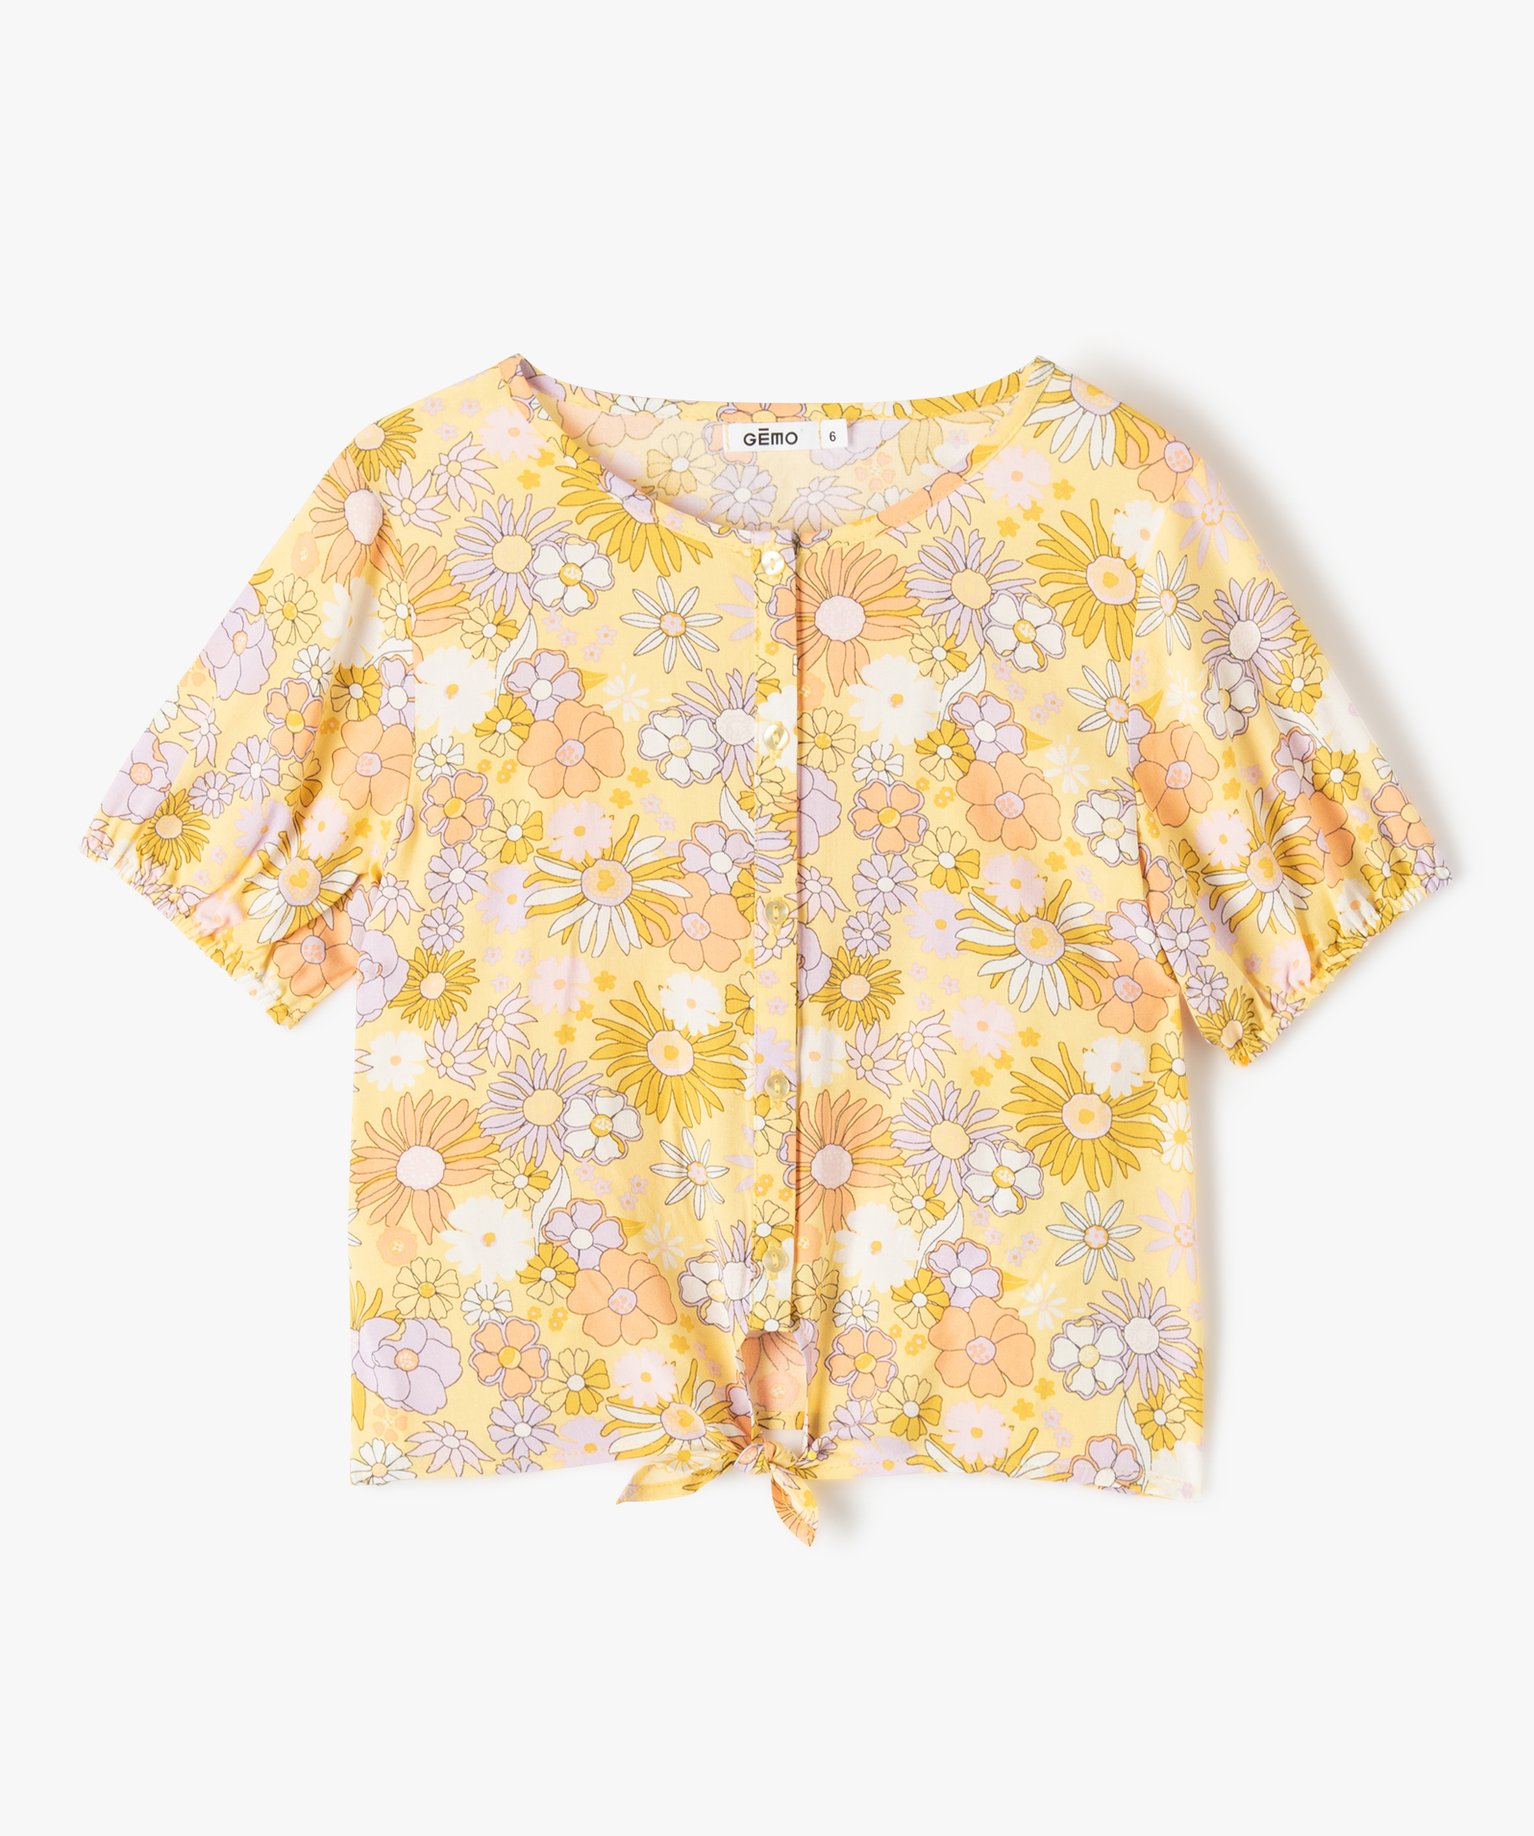 chemise fille a manches courtes et motifs fleuris jaune